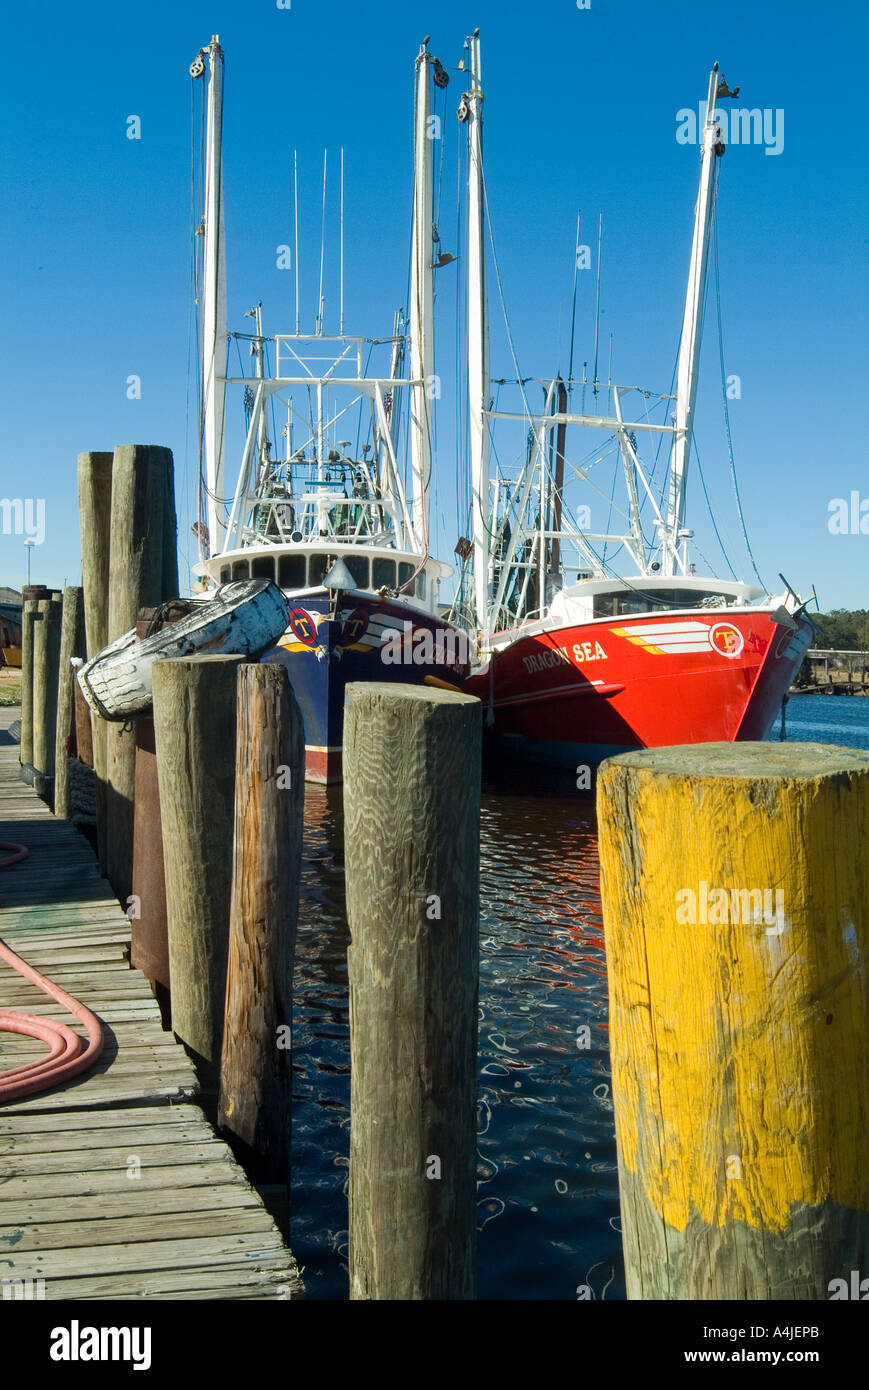 Bayou La Batre, Alabama - Jetty et bateaux de pêche. Banque D'Images